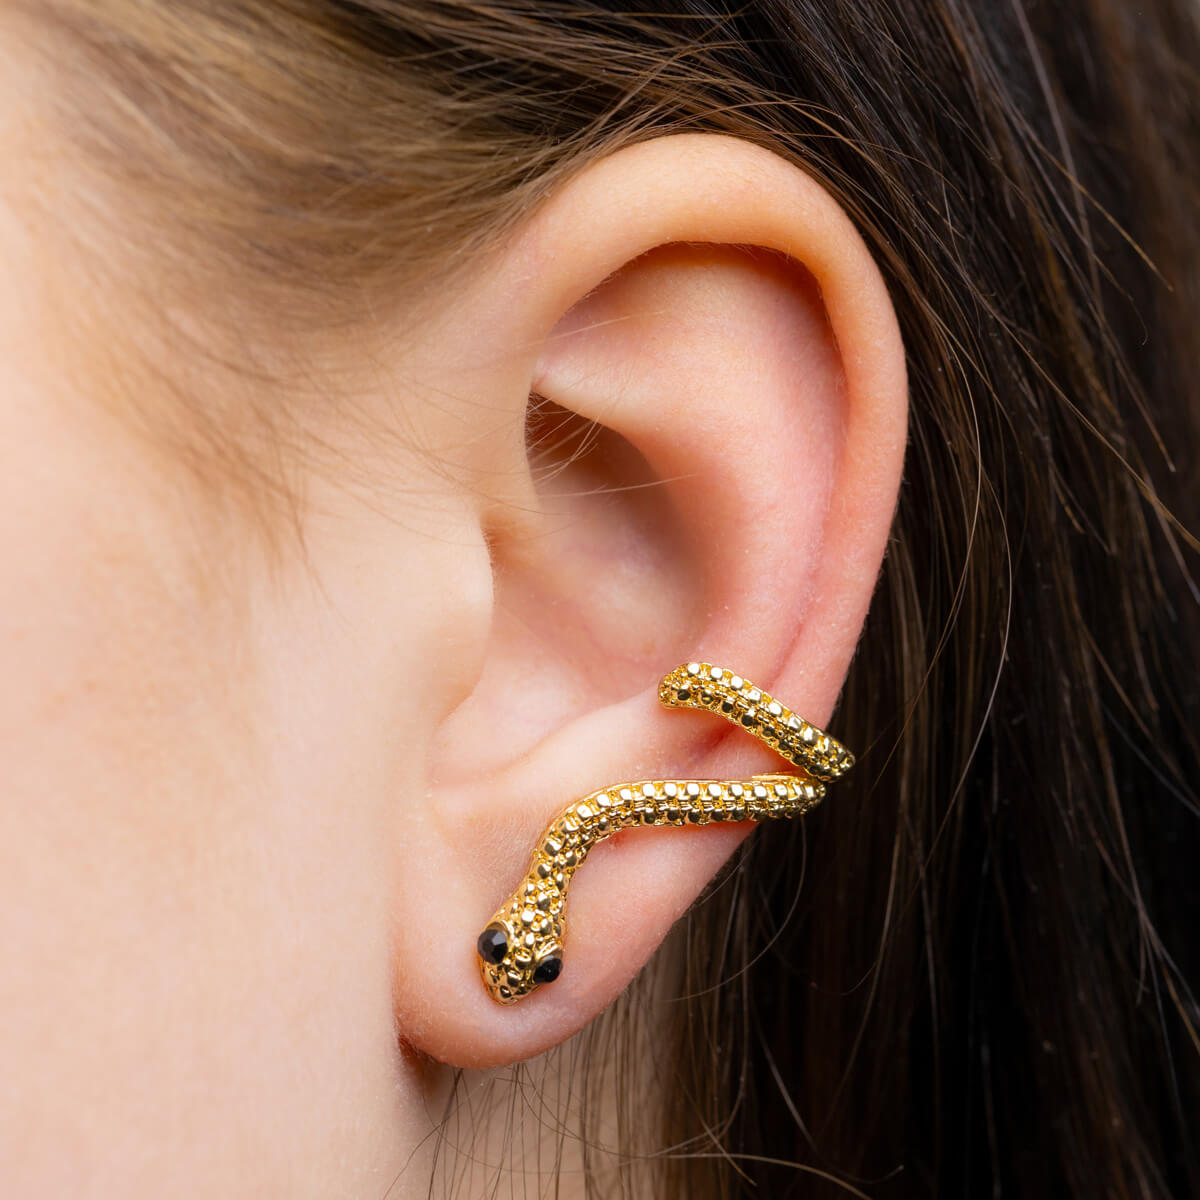 Hanging snake earrings